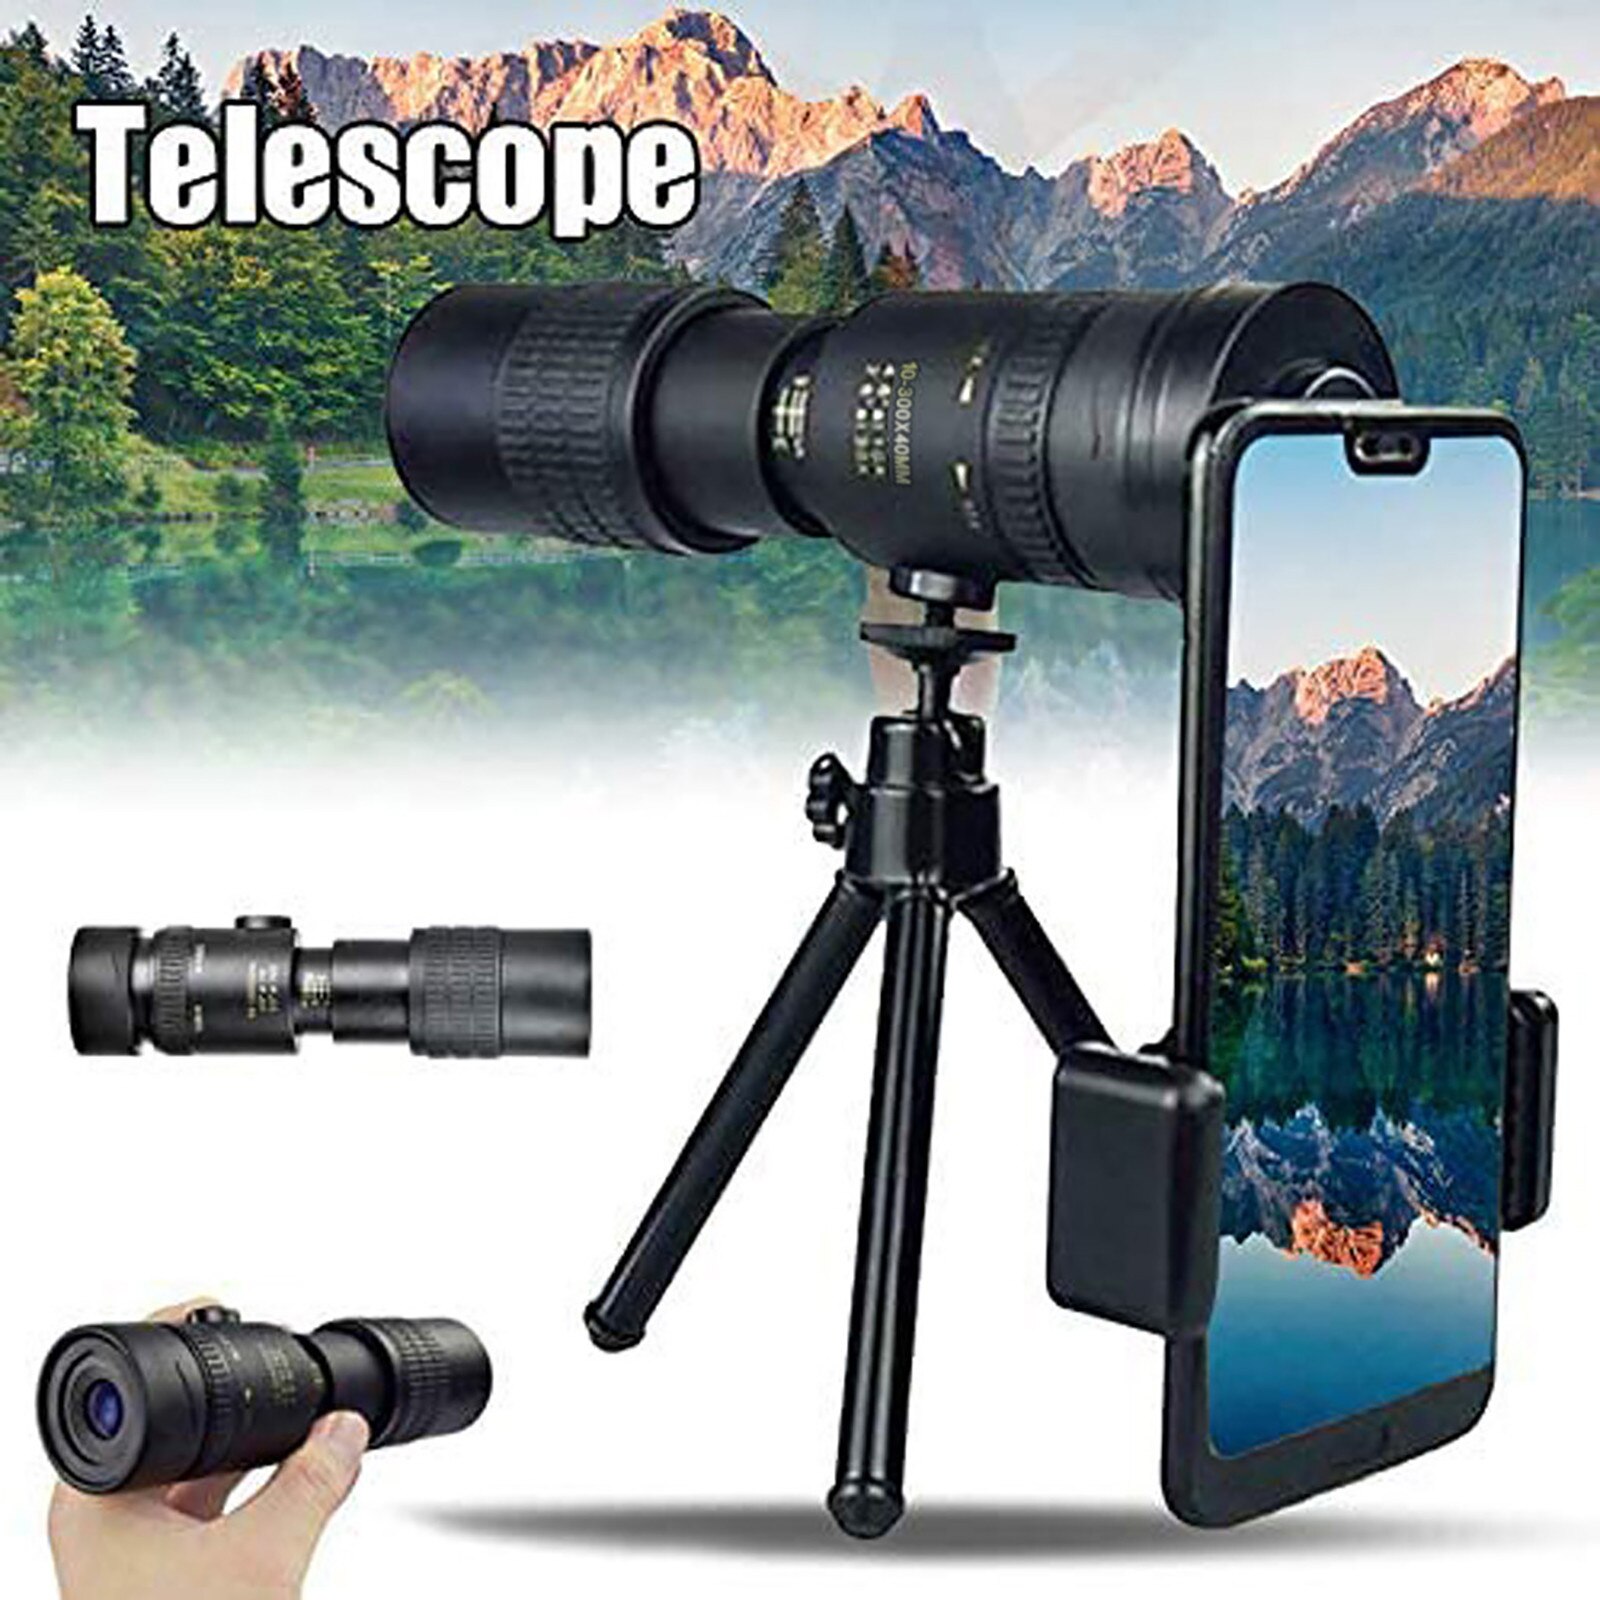 4K 10-300x40mm Super Tele Monoculaire Telescoop Zoom Monoculaire Verrekijker Pocket Telescoop Voor Smartphone Nemen Foto